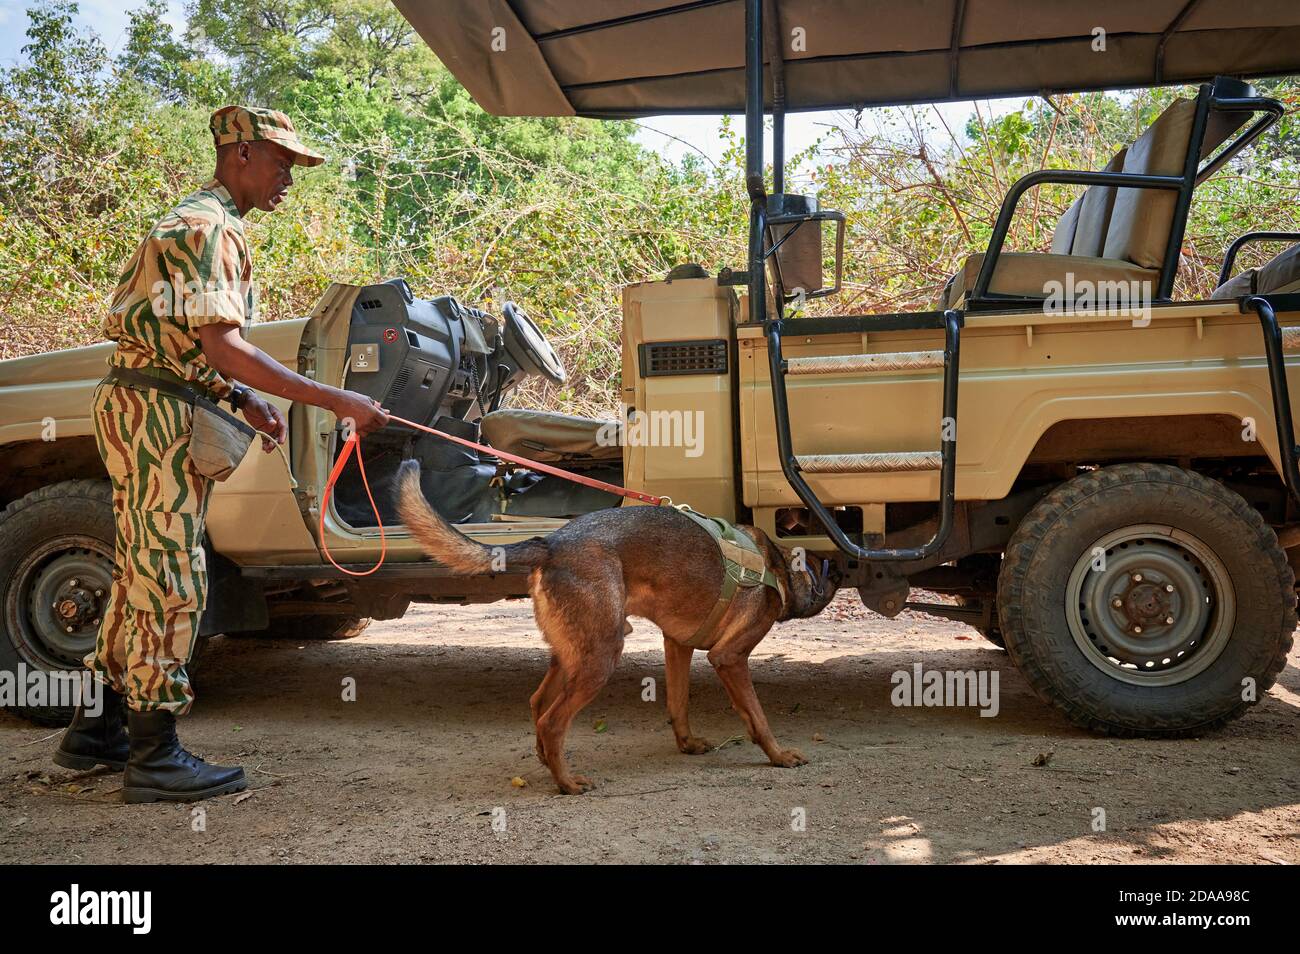 Demostración de conservación Luangwa del sur con perros anticaza furtiva, Unidad de Perros de detección K9, Parque Nacional Luangwa del sur, Mfuwe, Zambia, África Foto de stock